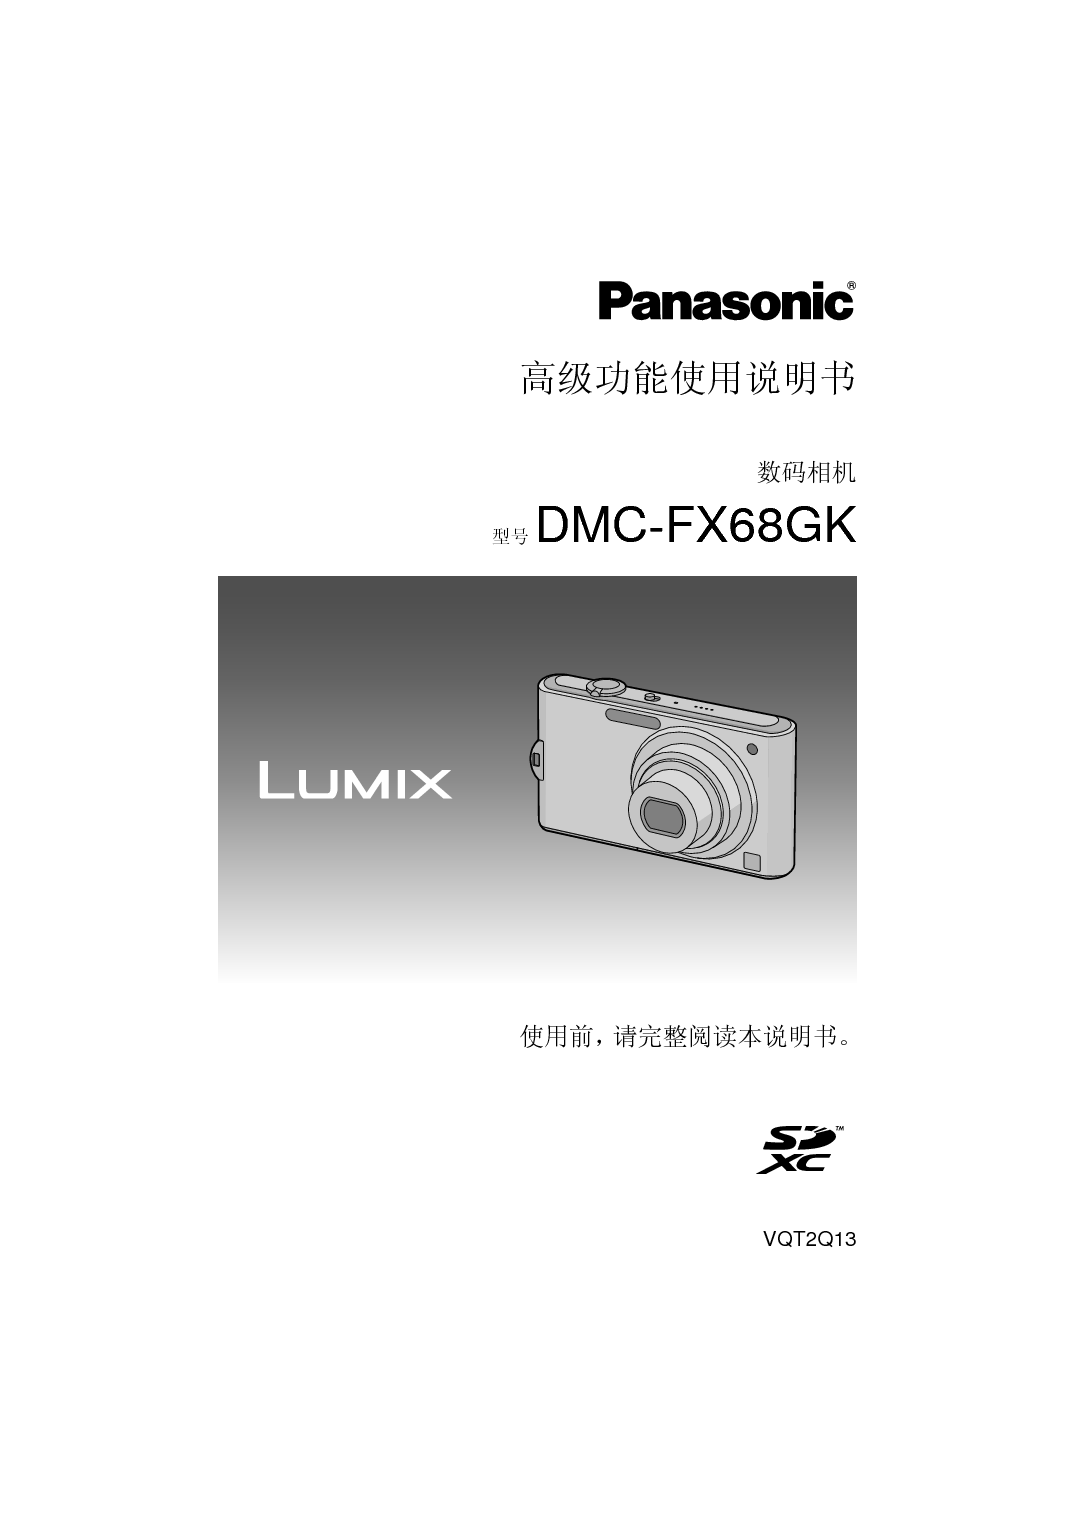 松下 Panasonic DMC-FX68GK 高级说明书 封面